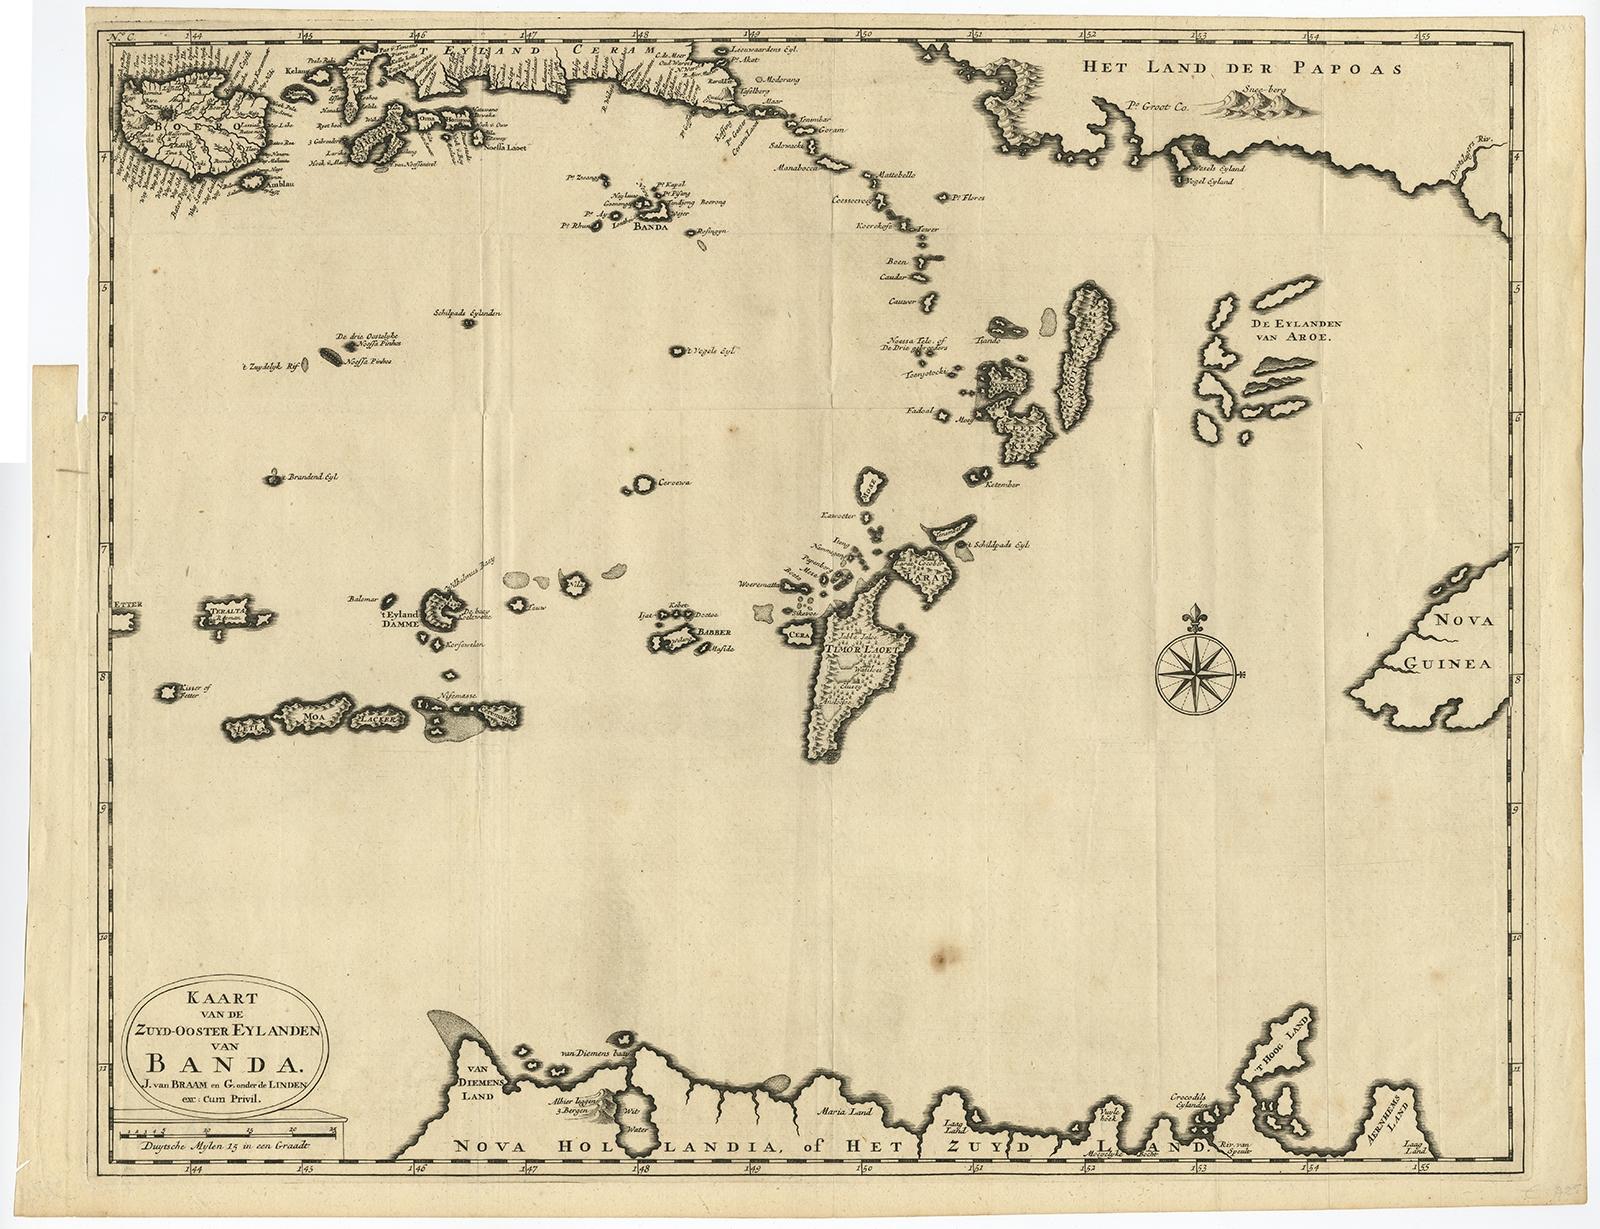 Antike Karte mit dem Titel 'Kaart van de Zuyd-Ooster Eylanden van Banda' 

Karte des südöstlichen Teils der Banda-Inseln. Diese Karte stammt aus 